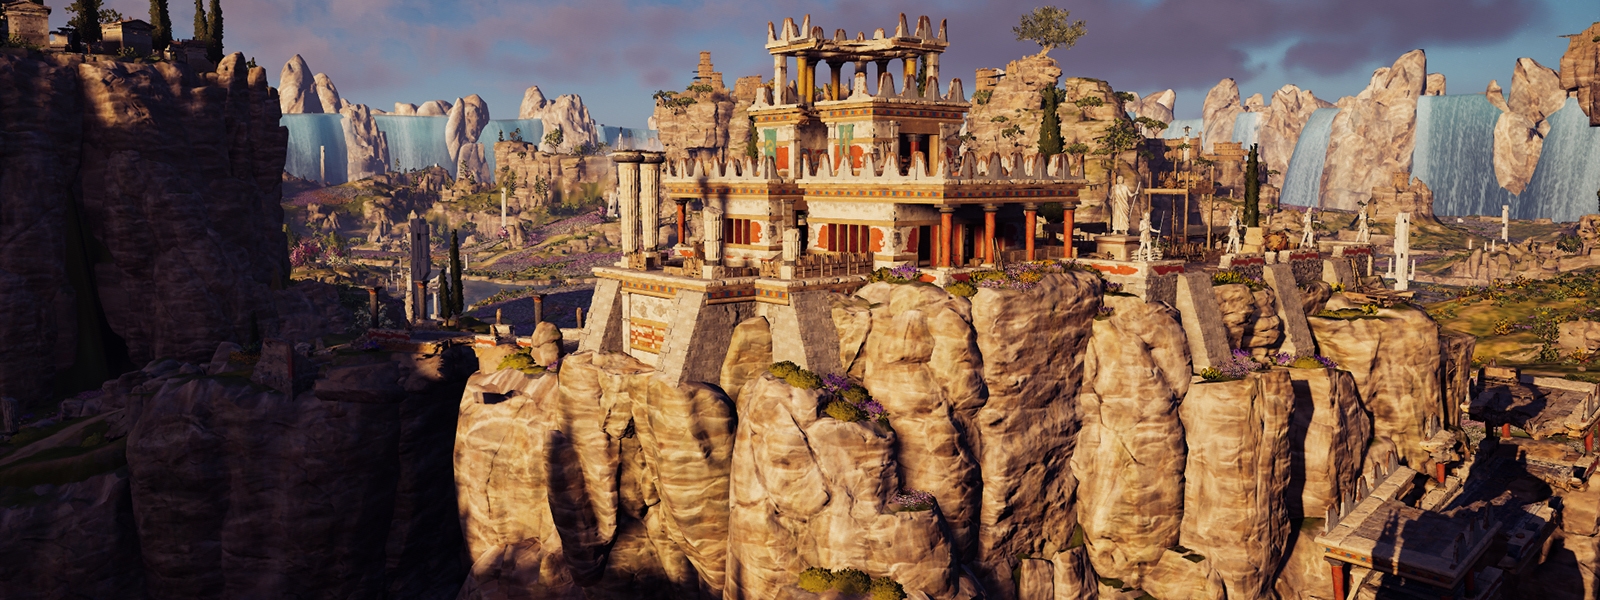 Assassins Creed Odyssey: Судьба Атлантиды - все остраконы